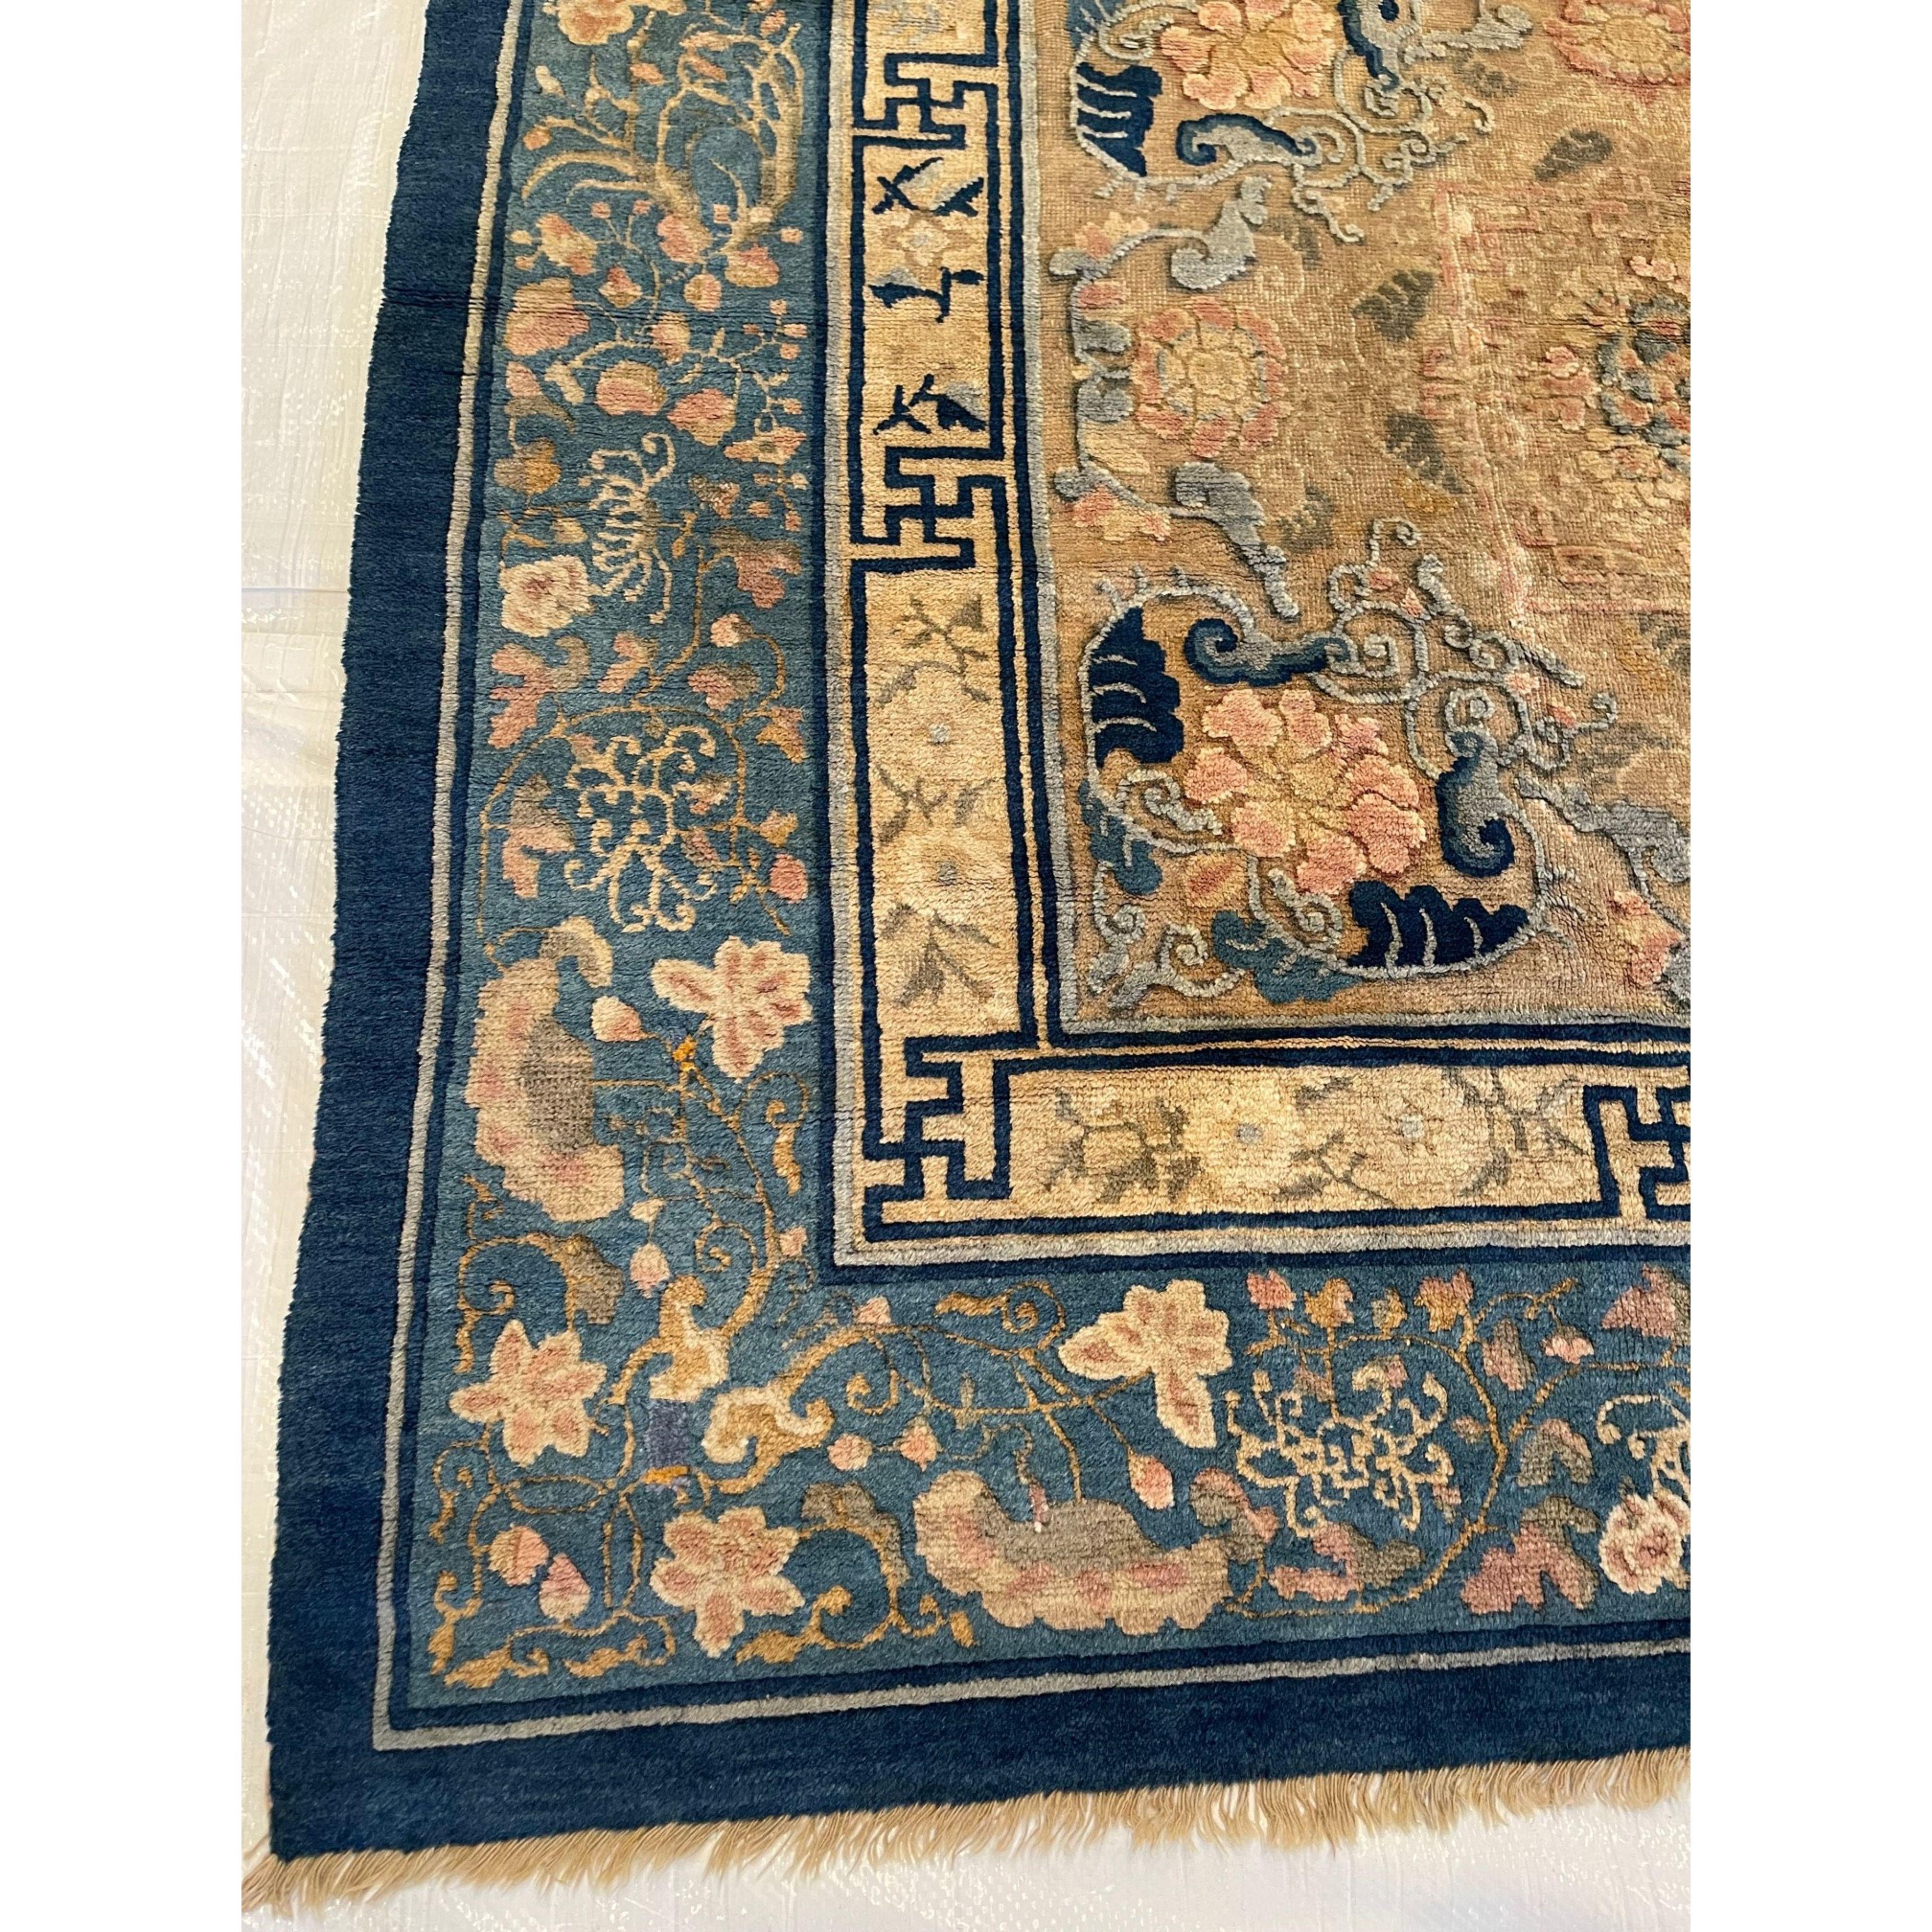 Antike chinesische Teppiche wurden, im Gegensatz zu den meisten antiken Teppichproduktionen, fast ausschließlich für den Eigenbedarf gewebt. Da sie meist vor europäischen und westlichen Einflüssen geschützt waren, ist dies der Grund, warum diese